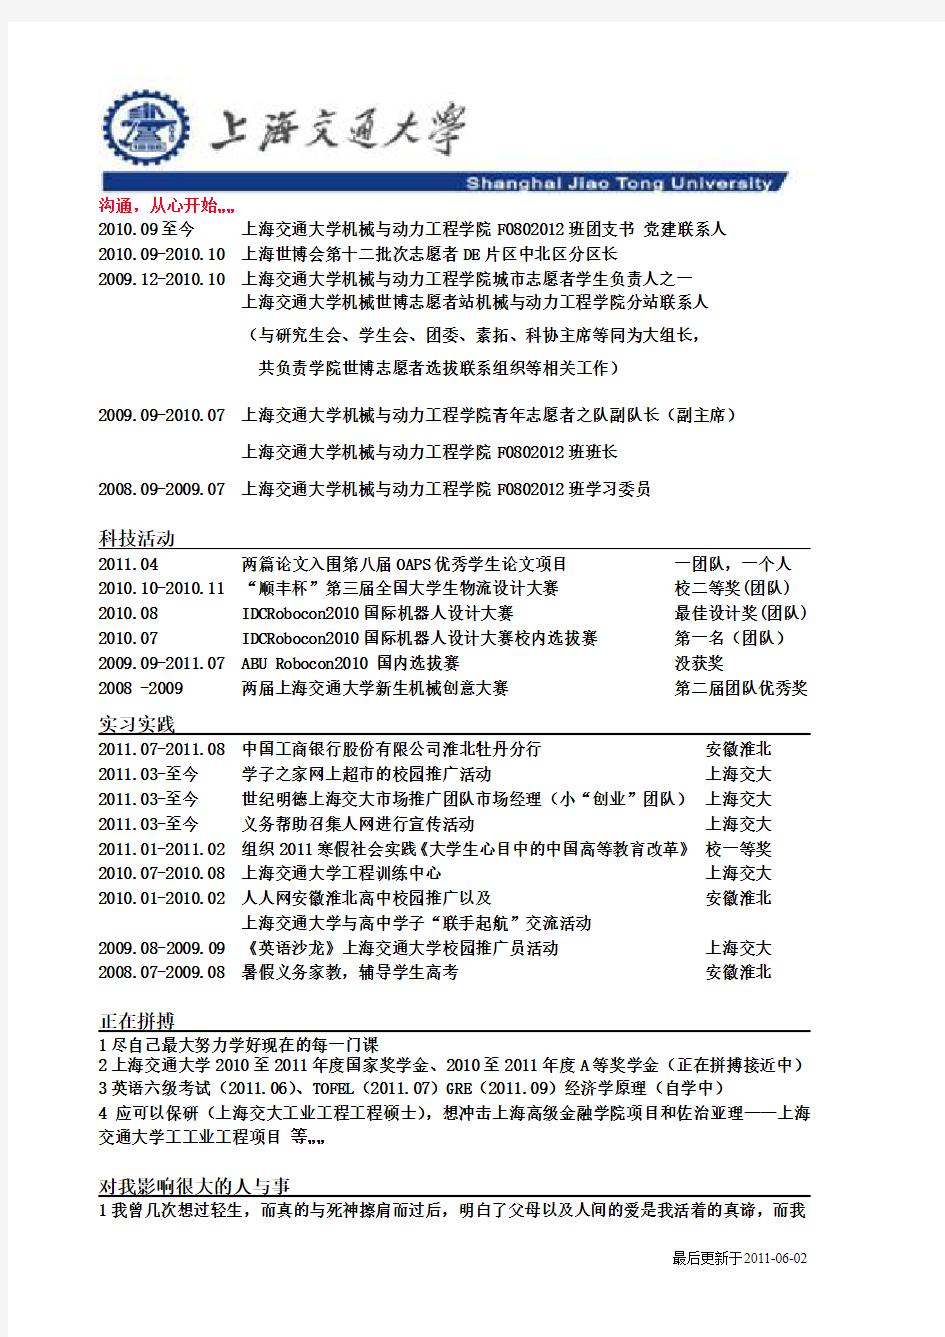 【完整版】夏明伟简历 resume of mingwei xia 2011-08-24